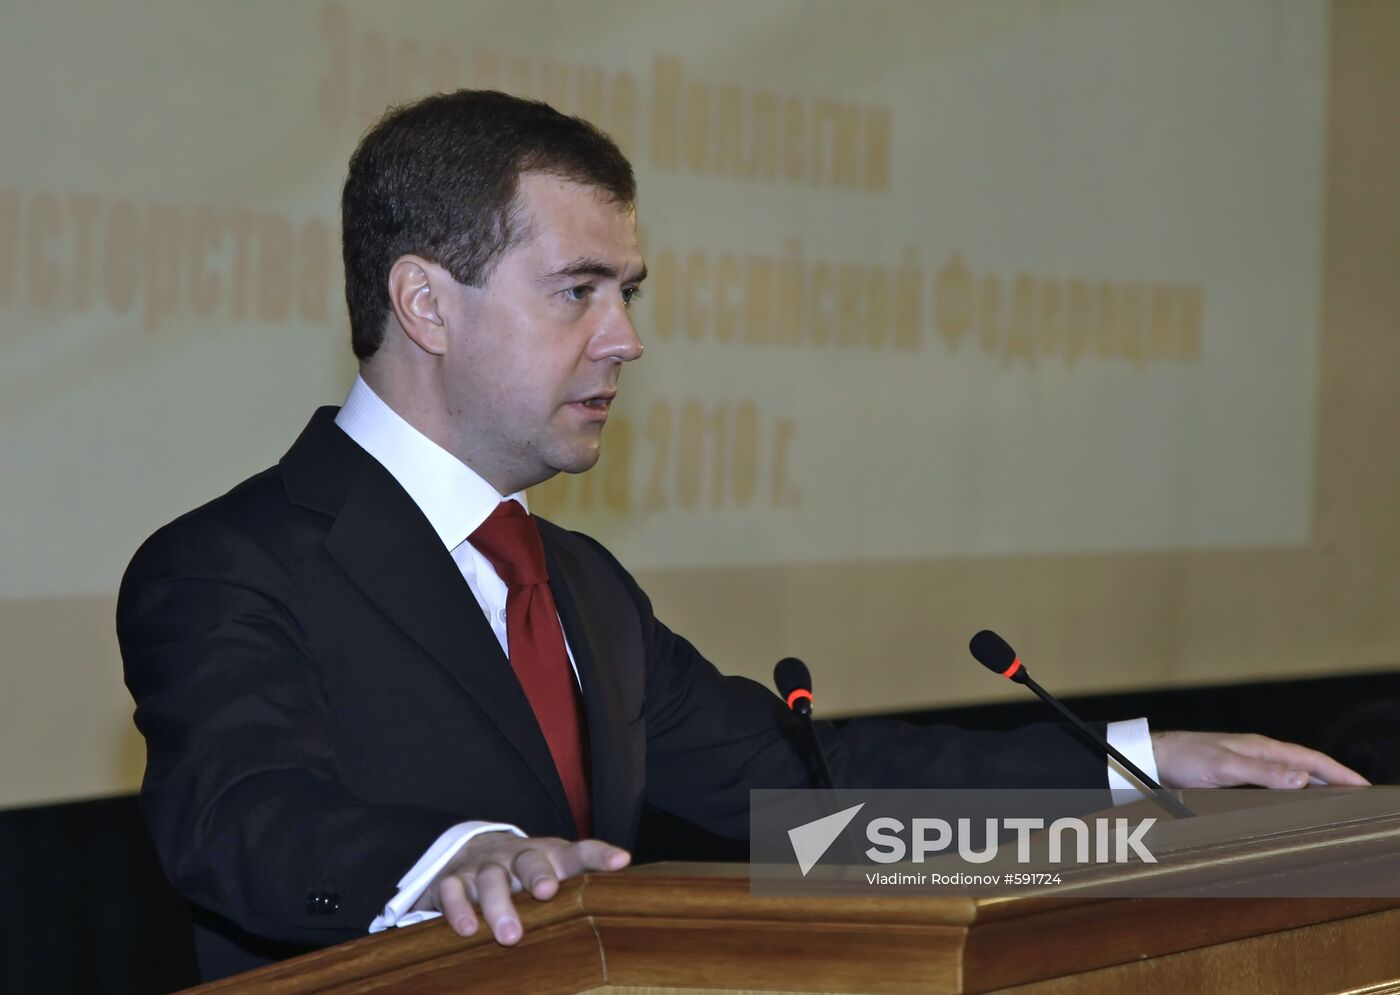 Dmitry Medvedev at Defense Ministry meeting